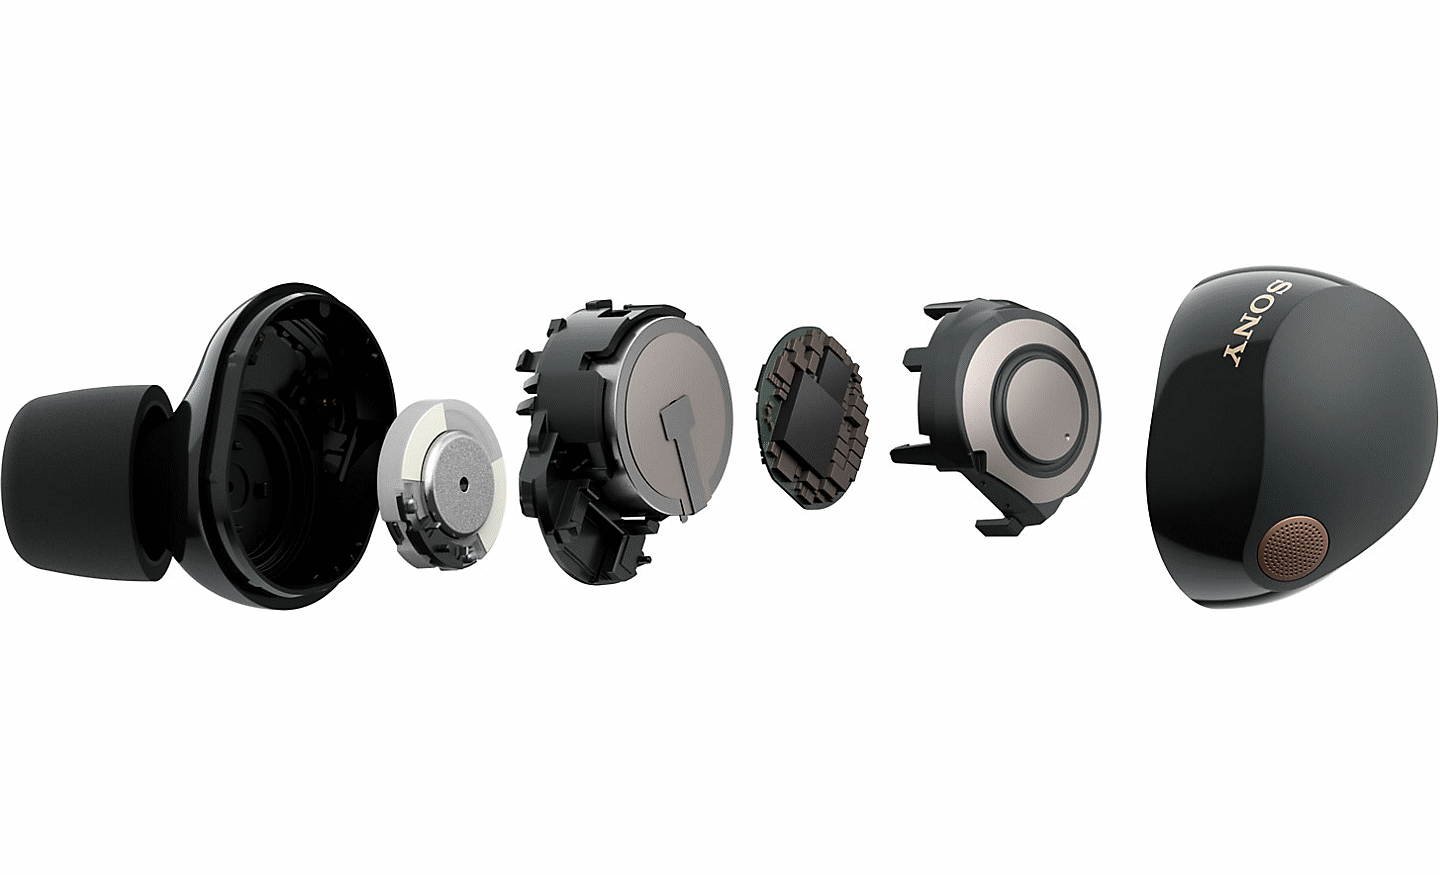 Snímek sluchátek WF-1000XM5 s vnitřními součástmi rozdělenými na jednotlivé kusy umístěné vedle sebe